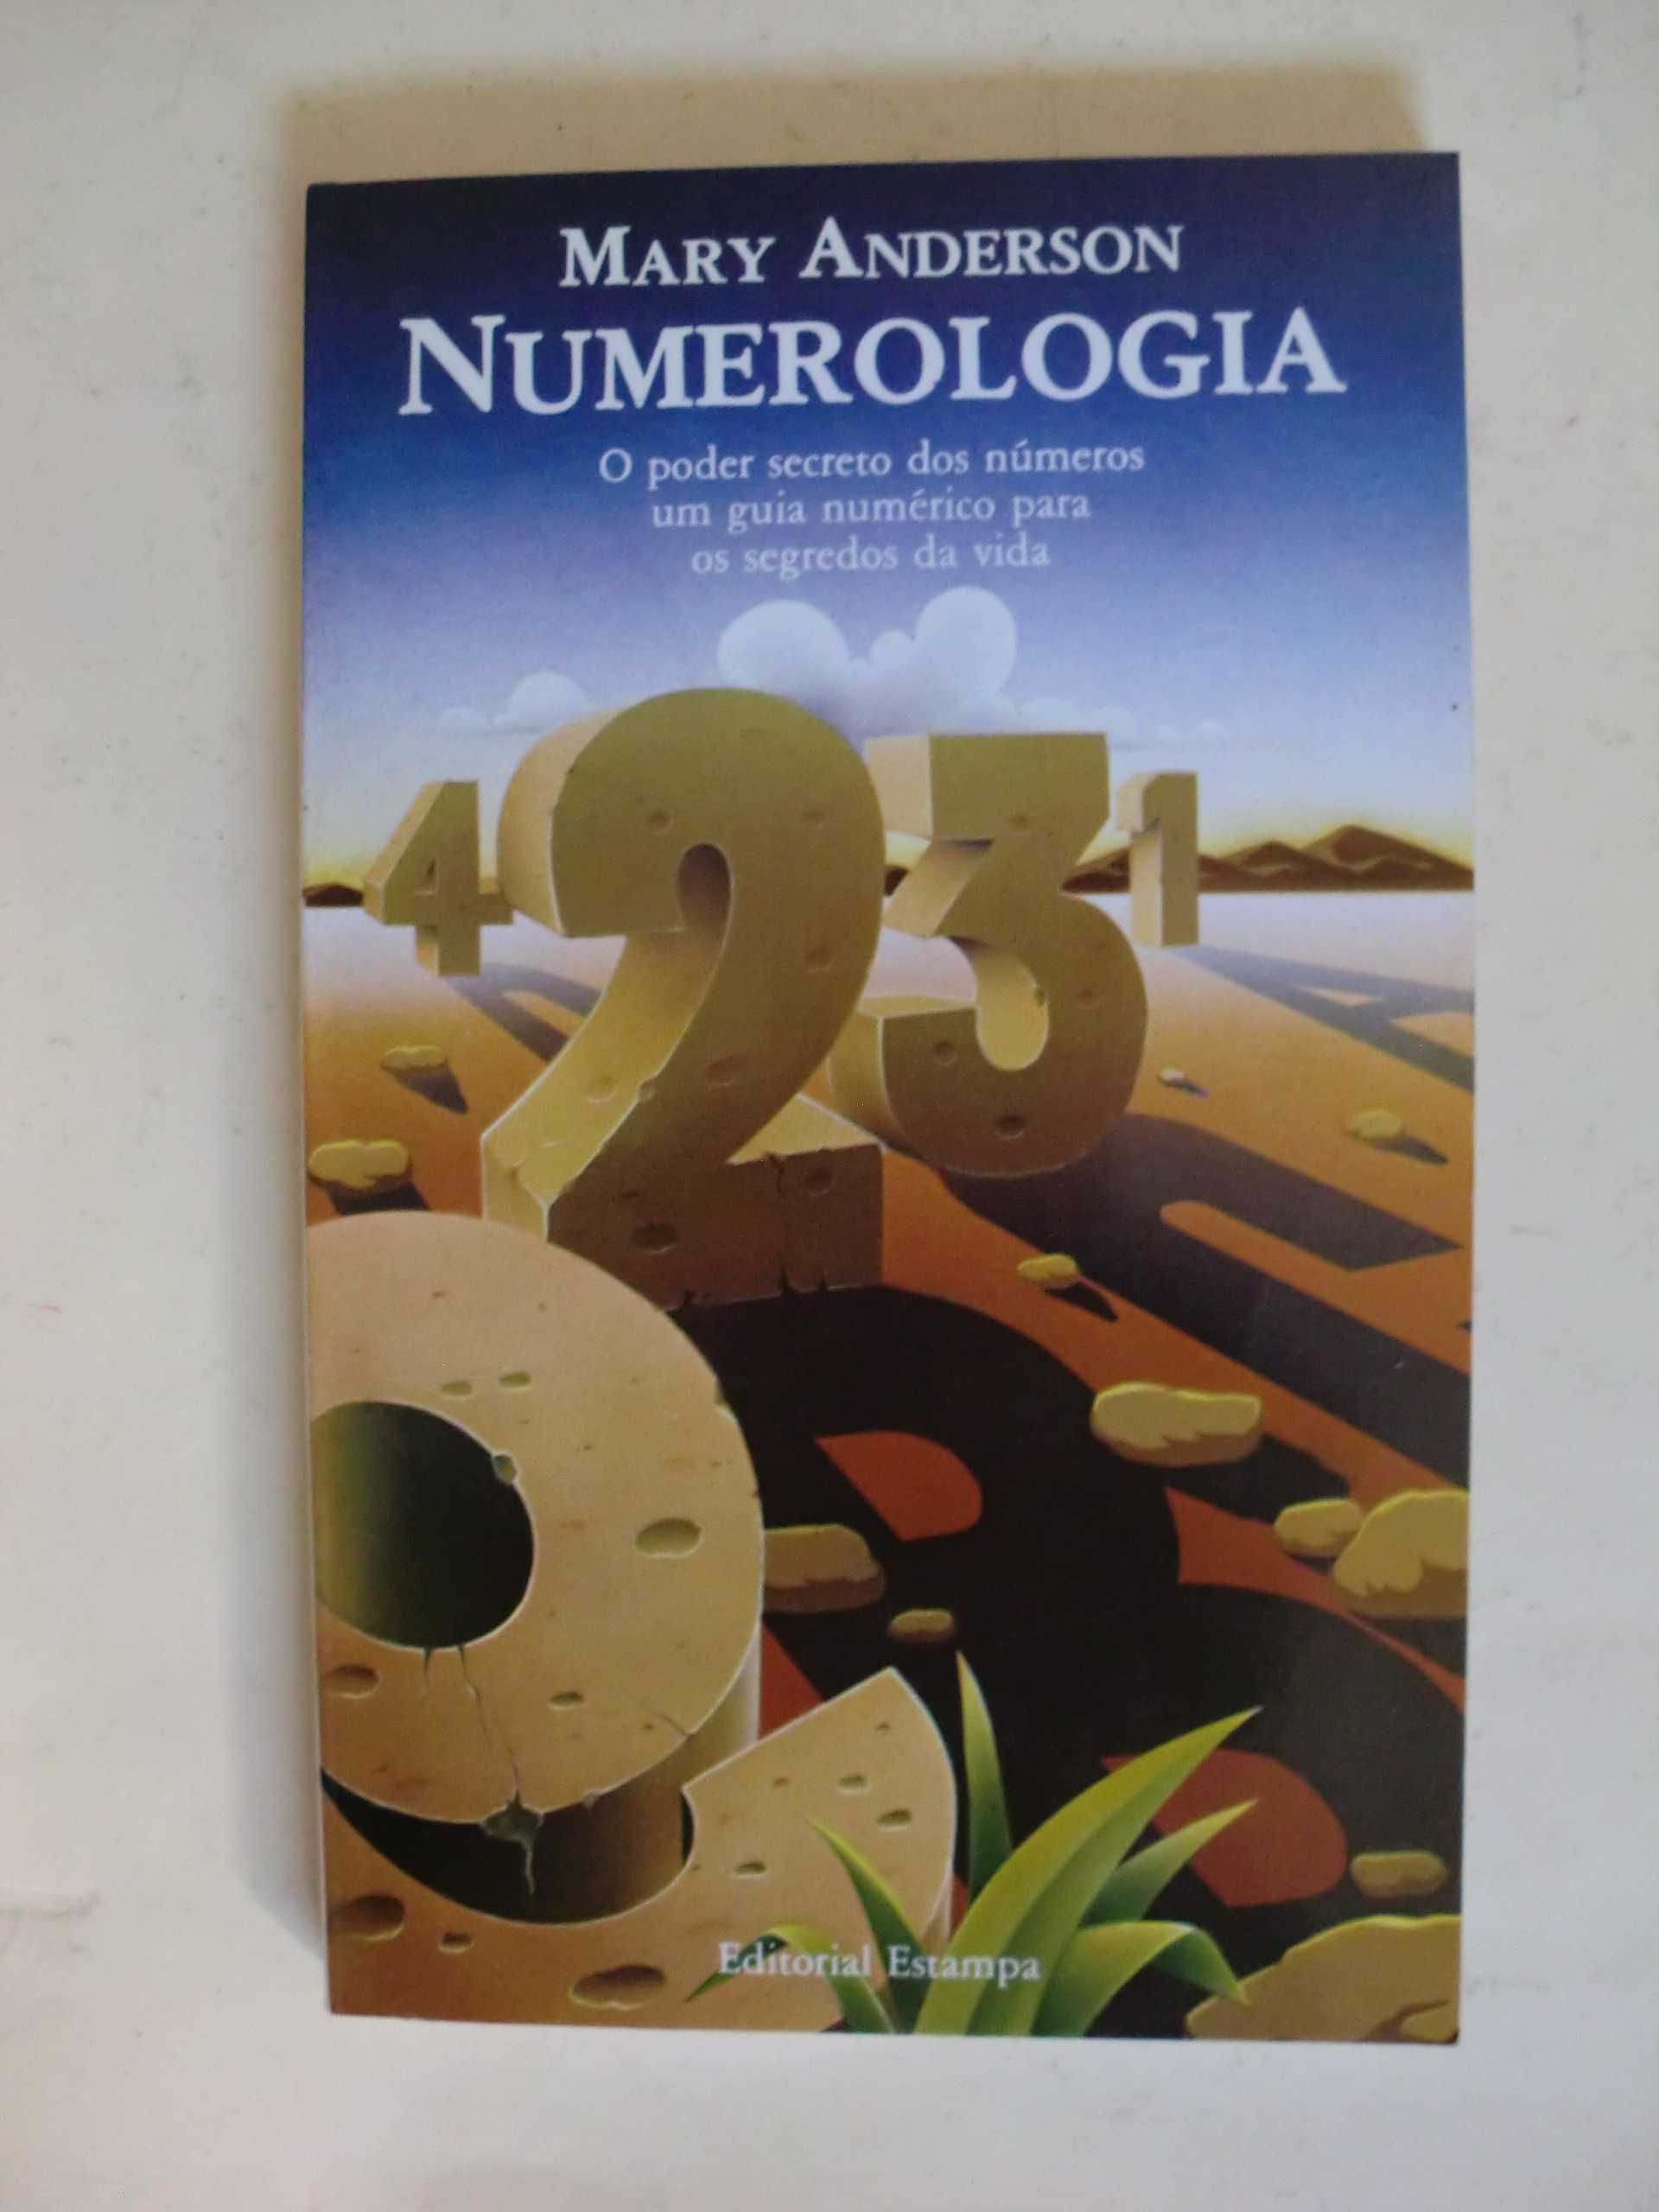 Numerologia
de Mary Anderson